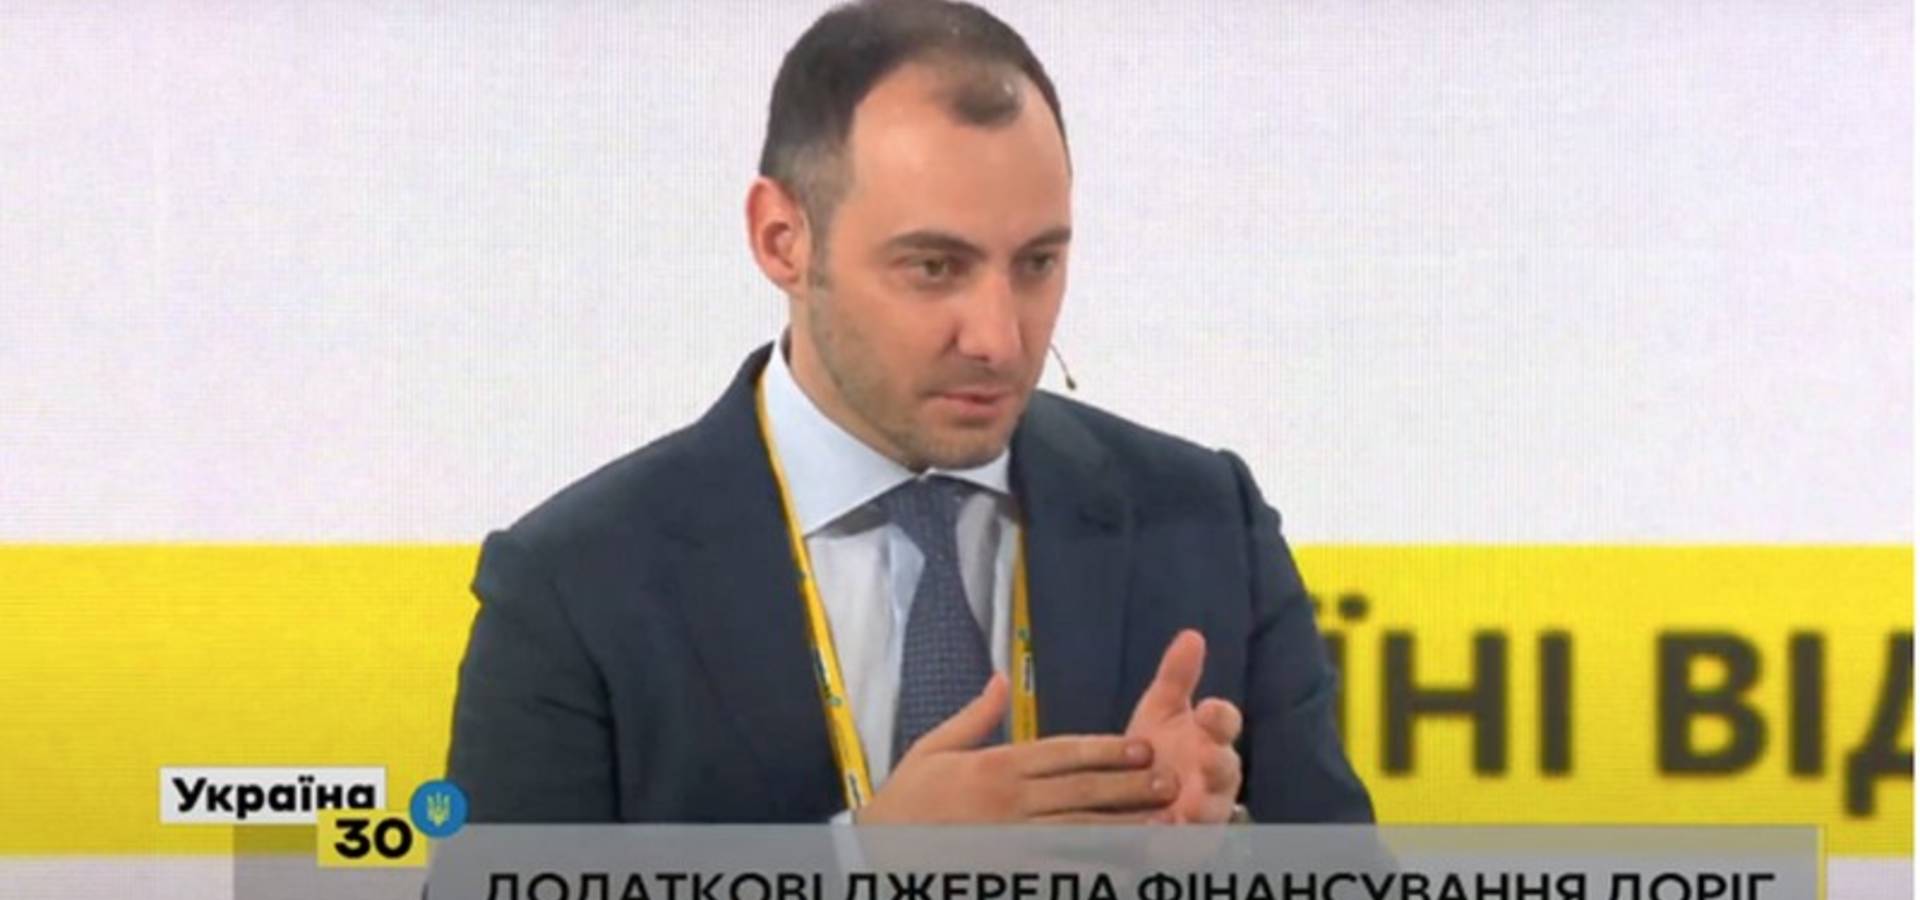 Частка відремонтованих В Україні доріг у 2021 році сягне вже 37% – голова Укравтодору Олександр Кубраков